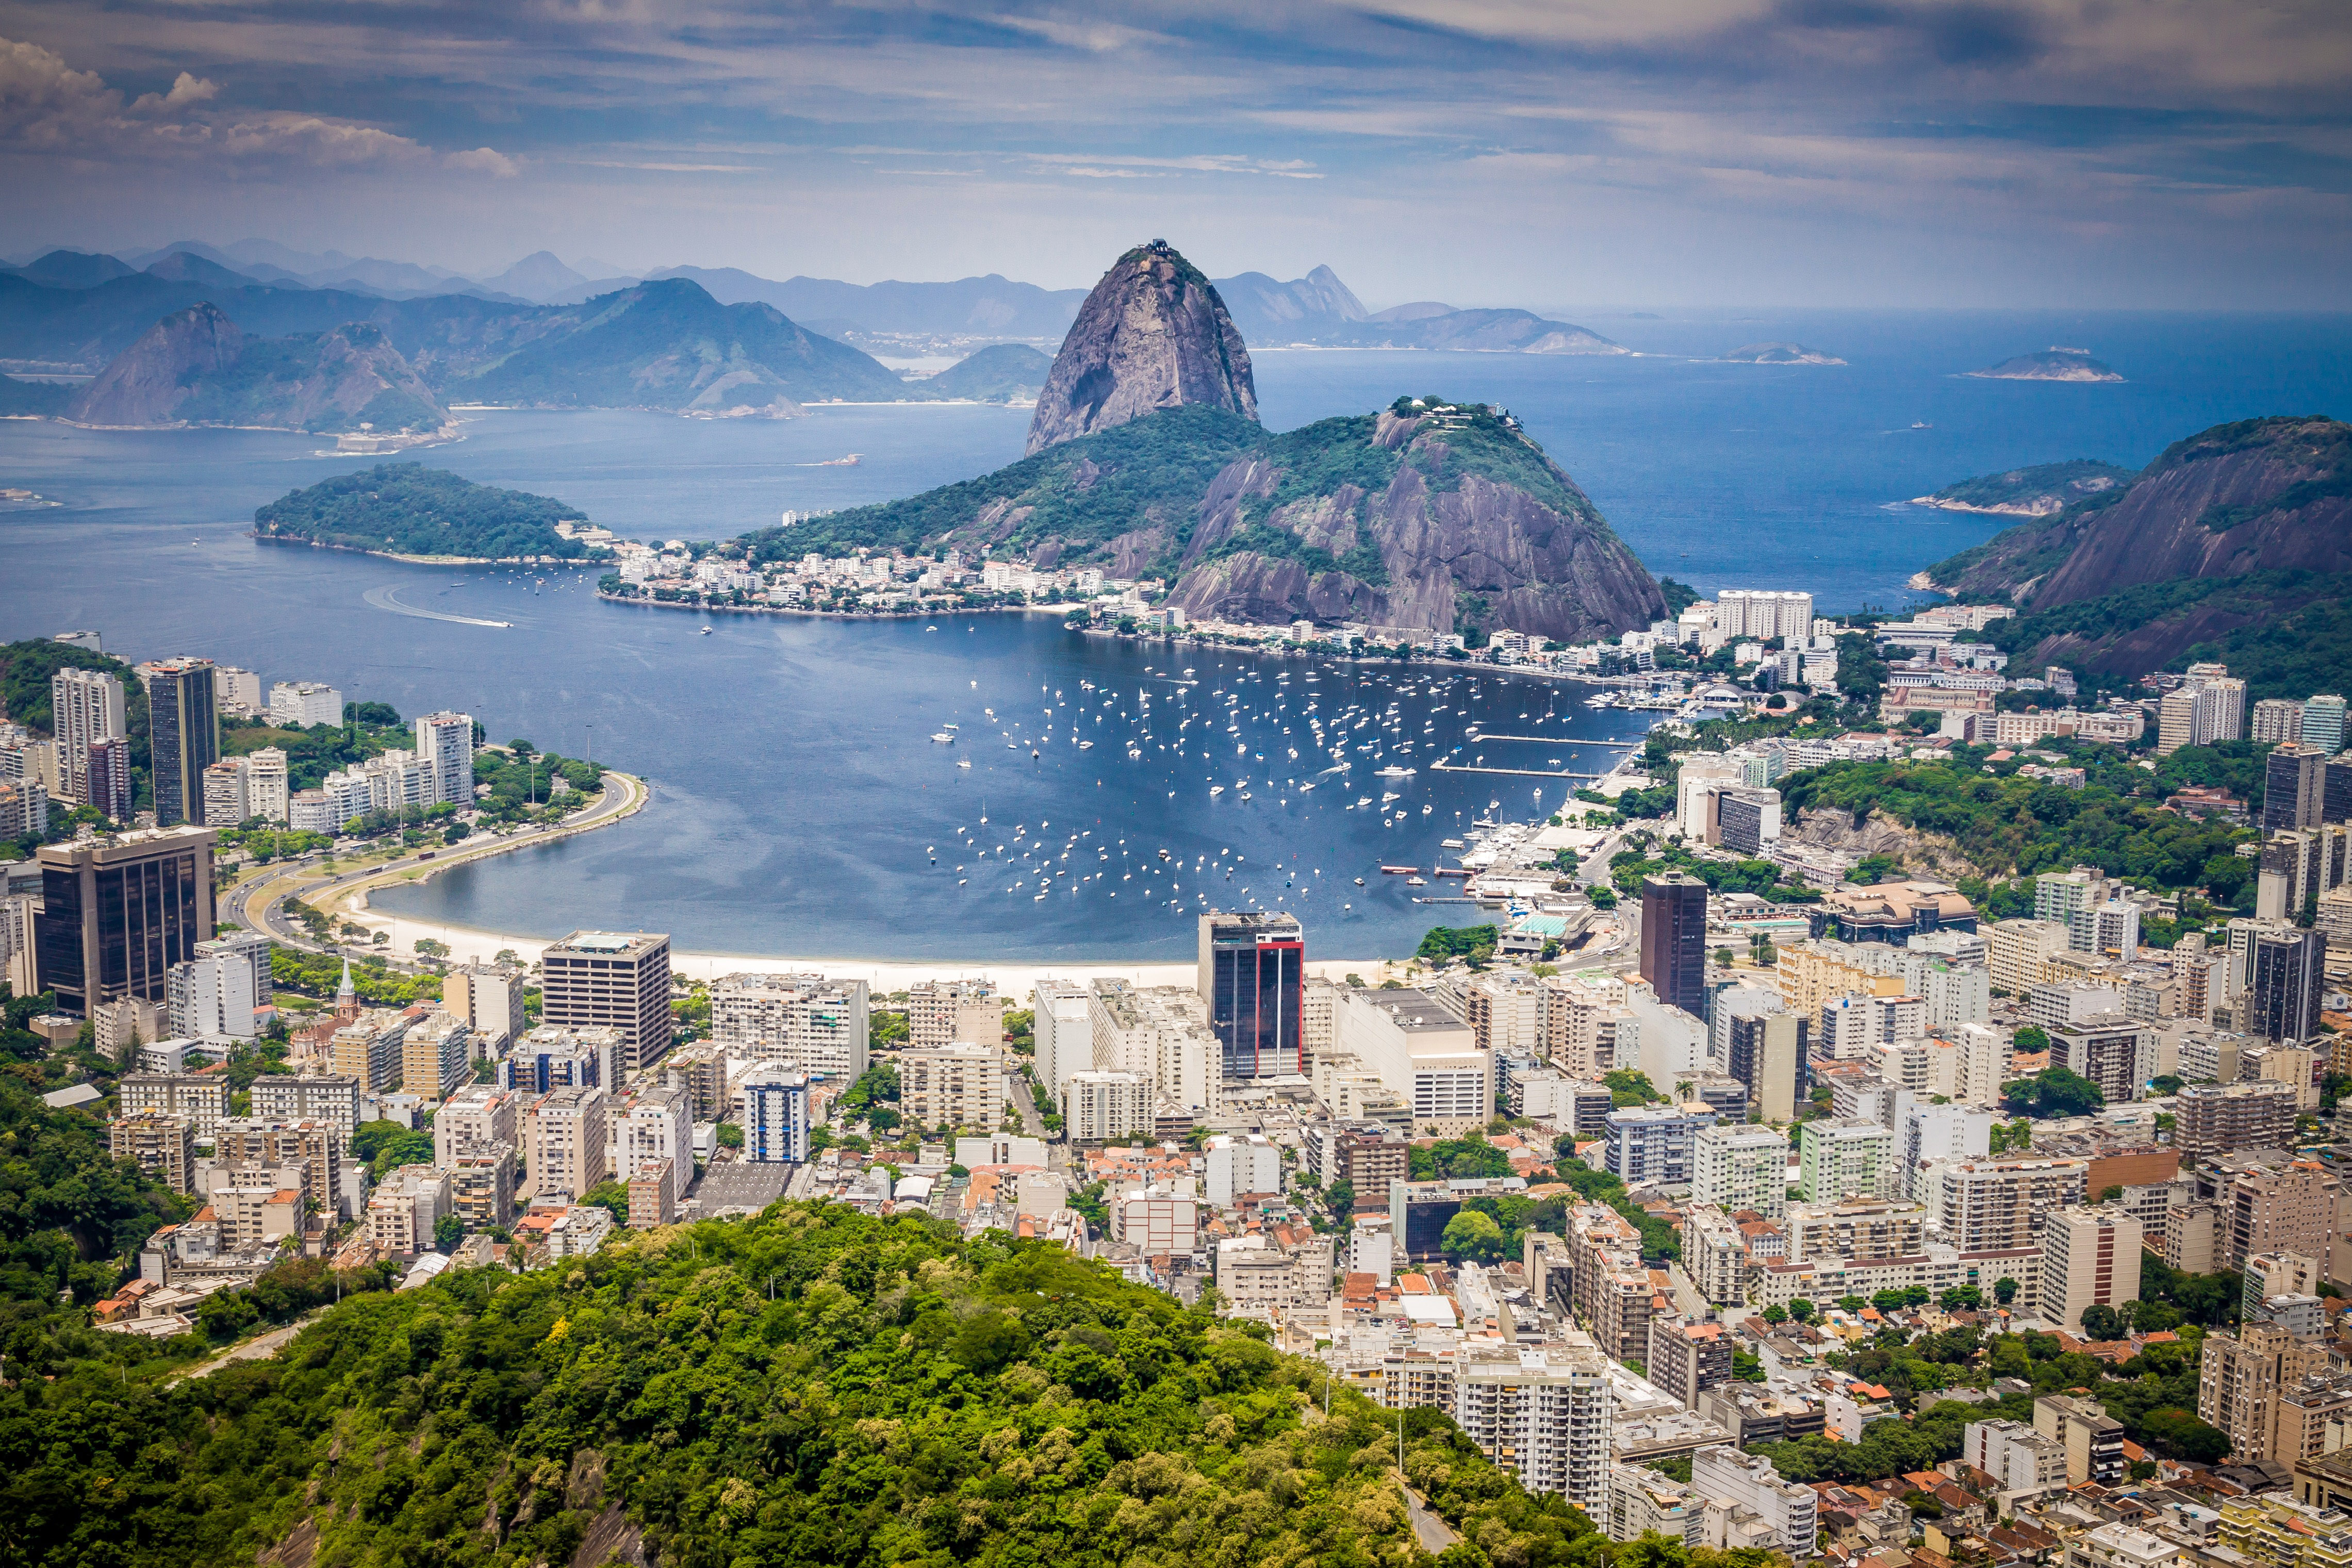 cityscape-and-landscape-view-of-rio-de-janeiro-brazil